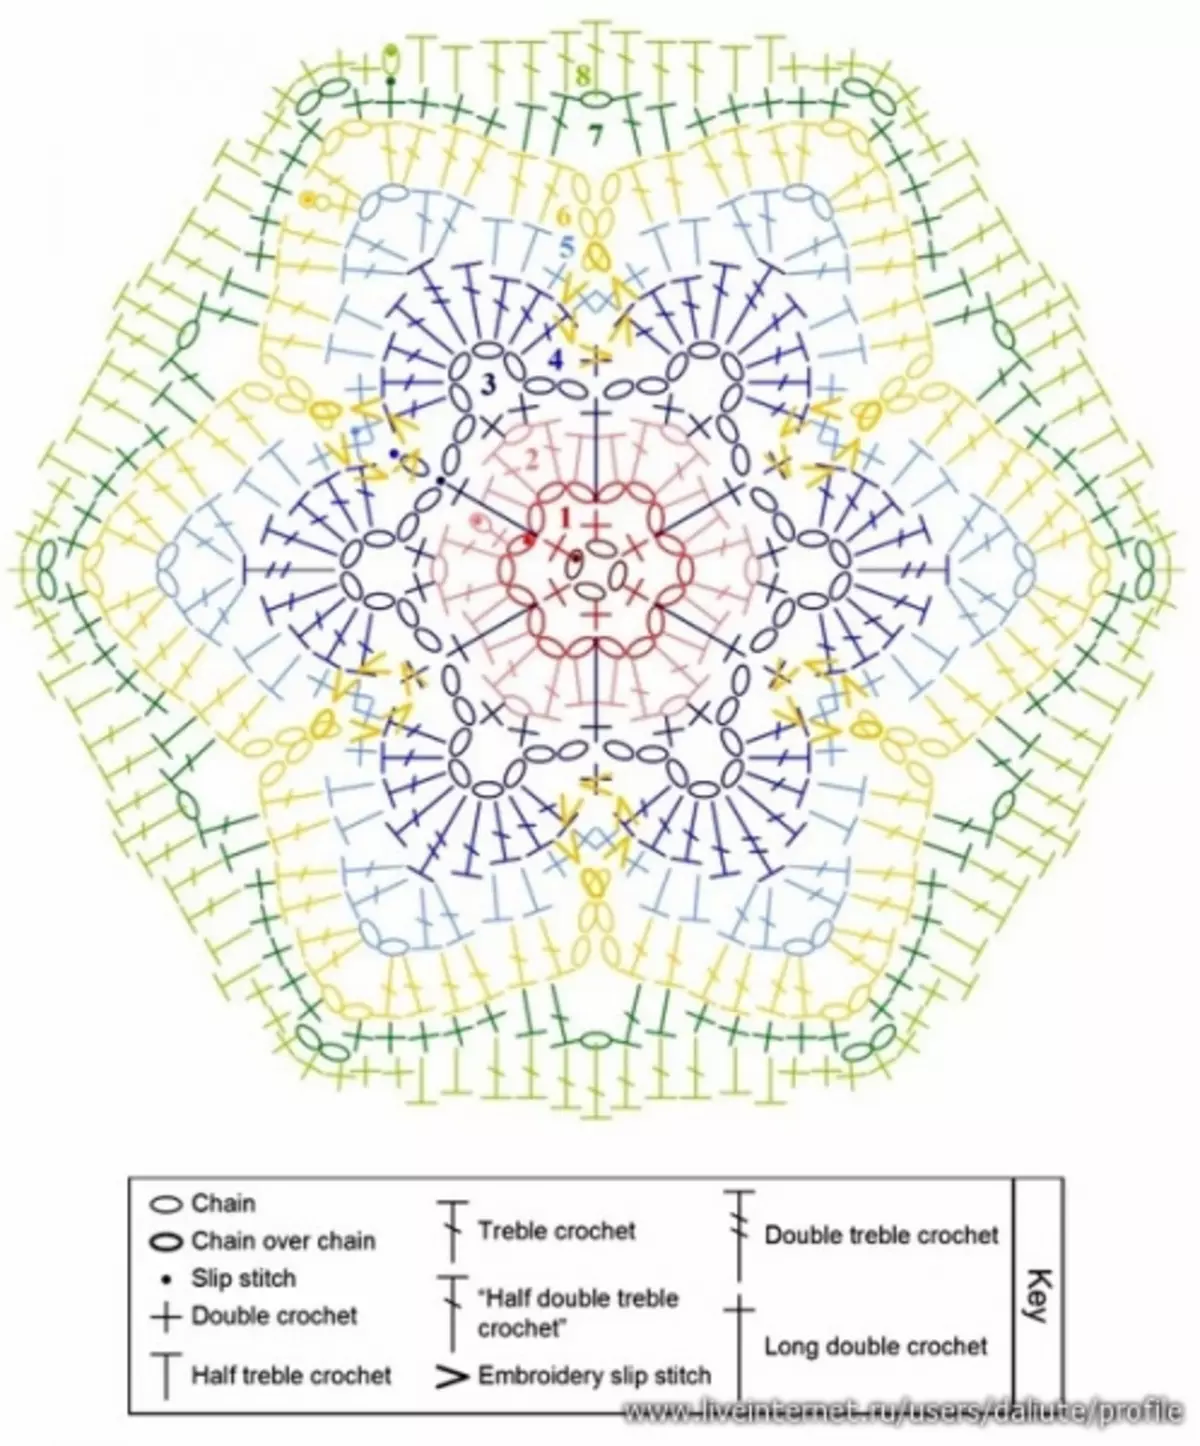 Crochet Motifs திட்டங்கள்: வீடியோ மாஸ்டர் வர்க்கம்